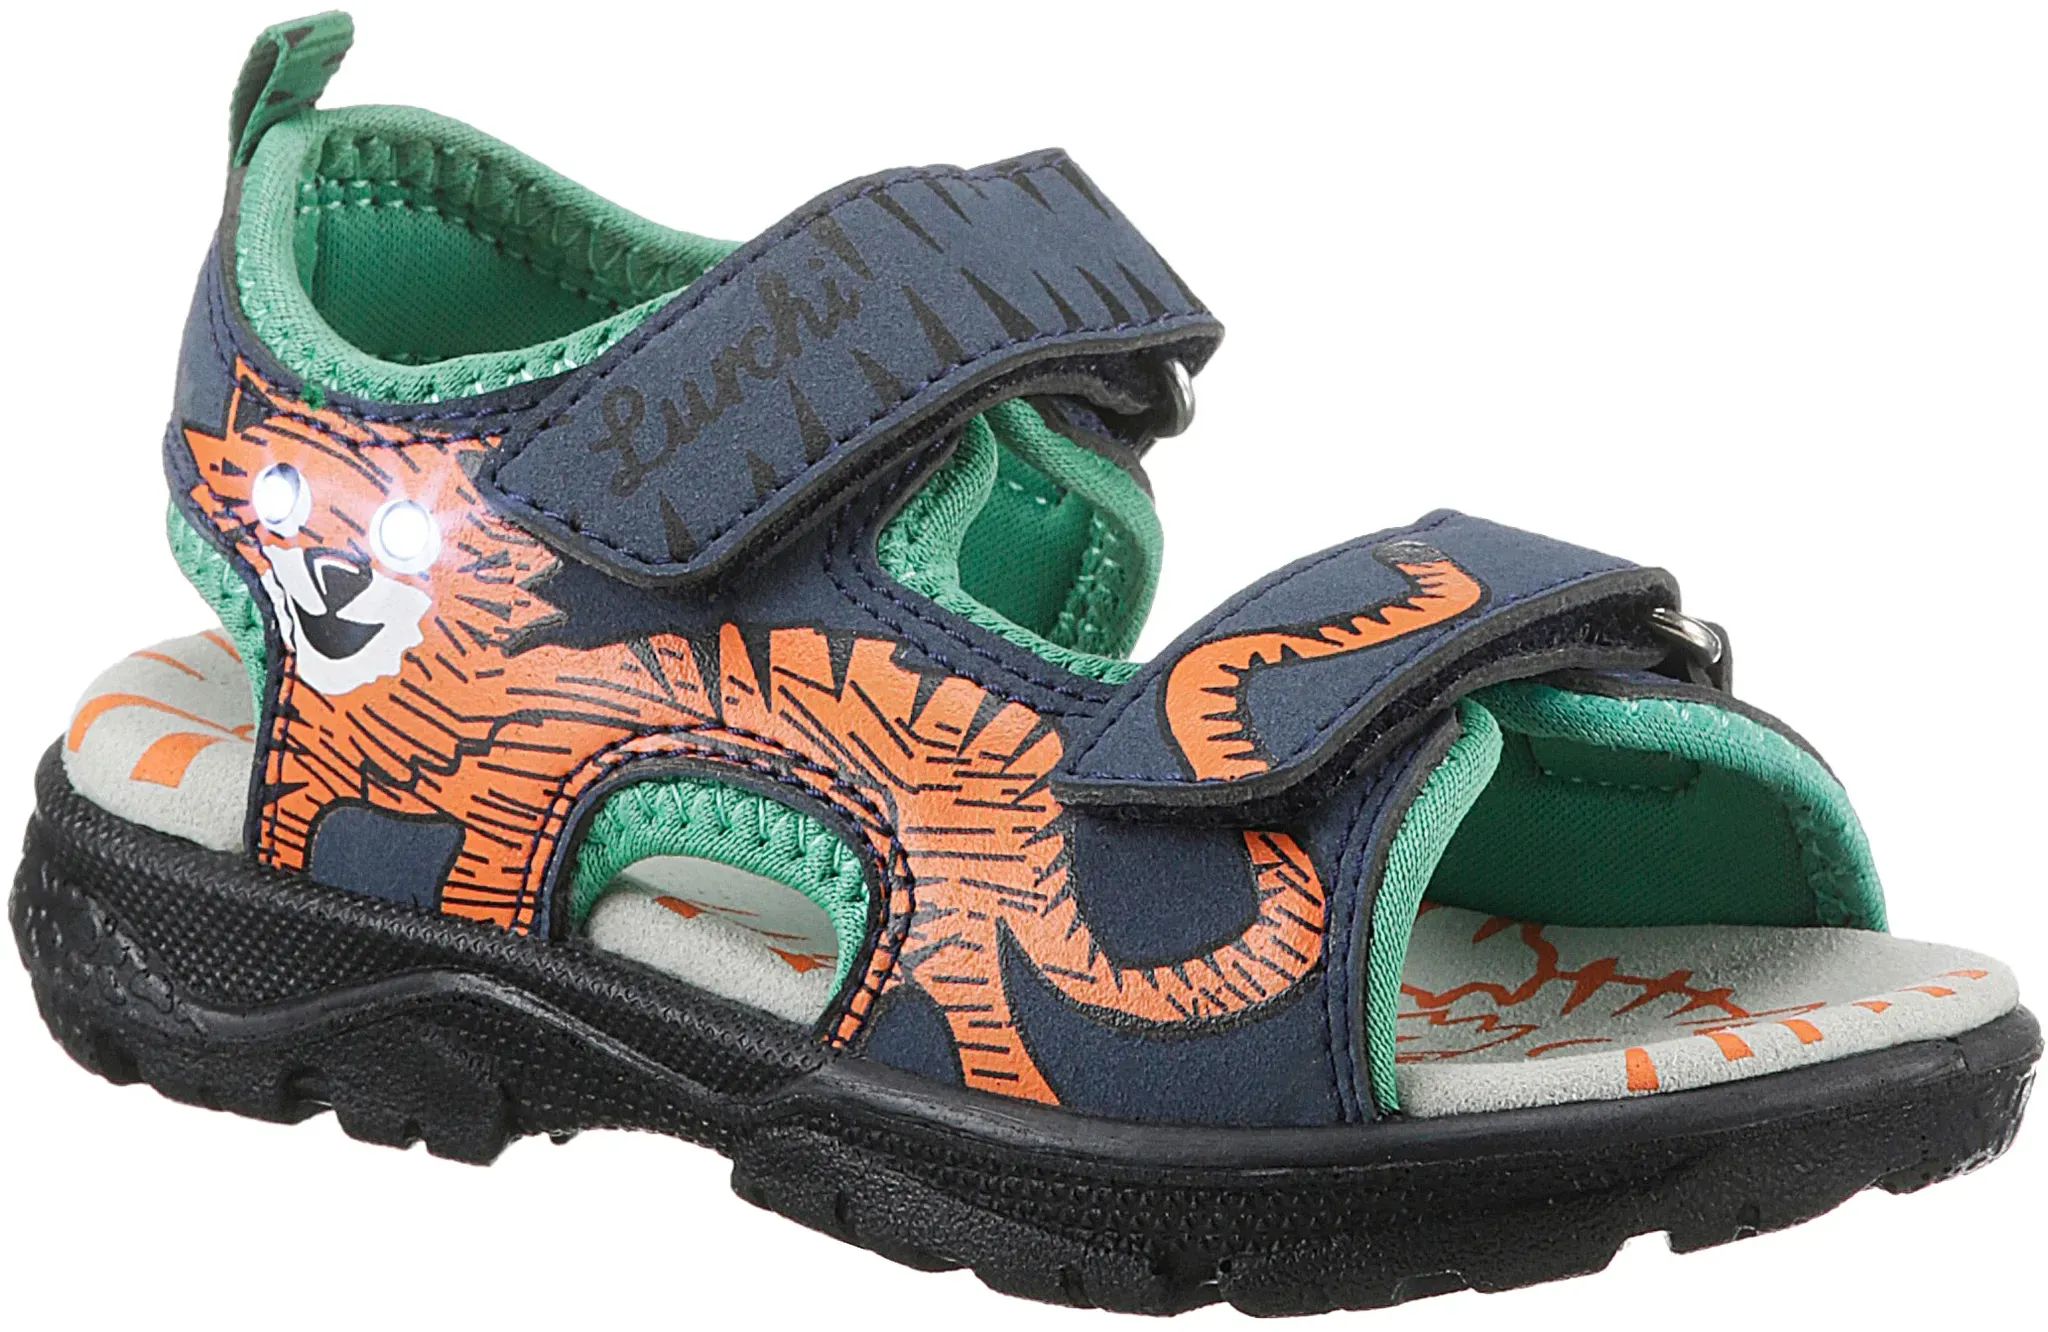 Sandale LURCHI "Blinkschuh Khan" Gr. 26, blau (navy, green) Kinder Schuhe Sommerschuh, Klettschuh, Outdoorschuh, mit cooler Blinkfunktion